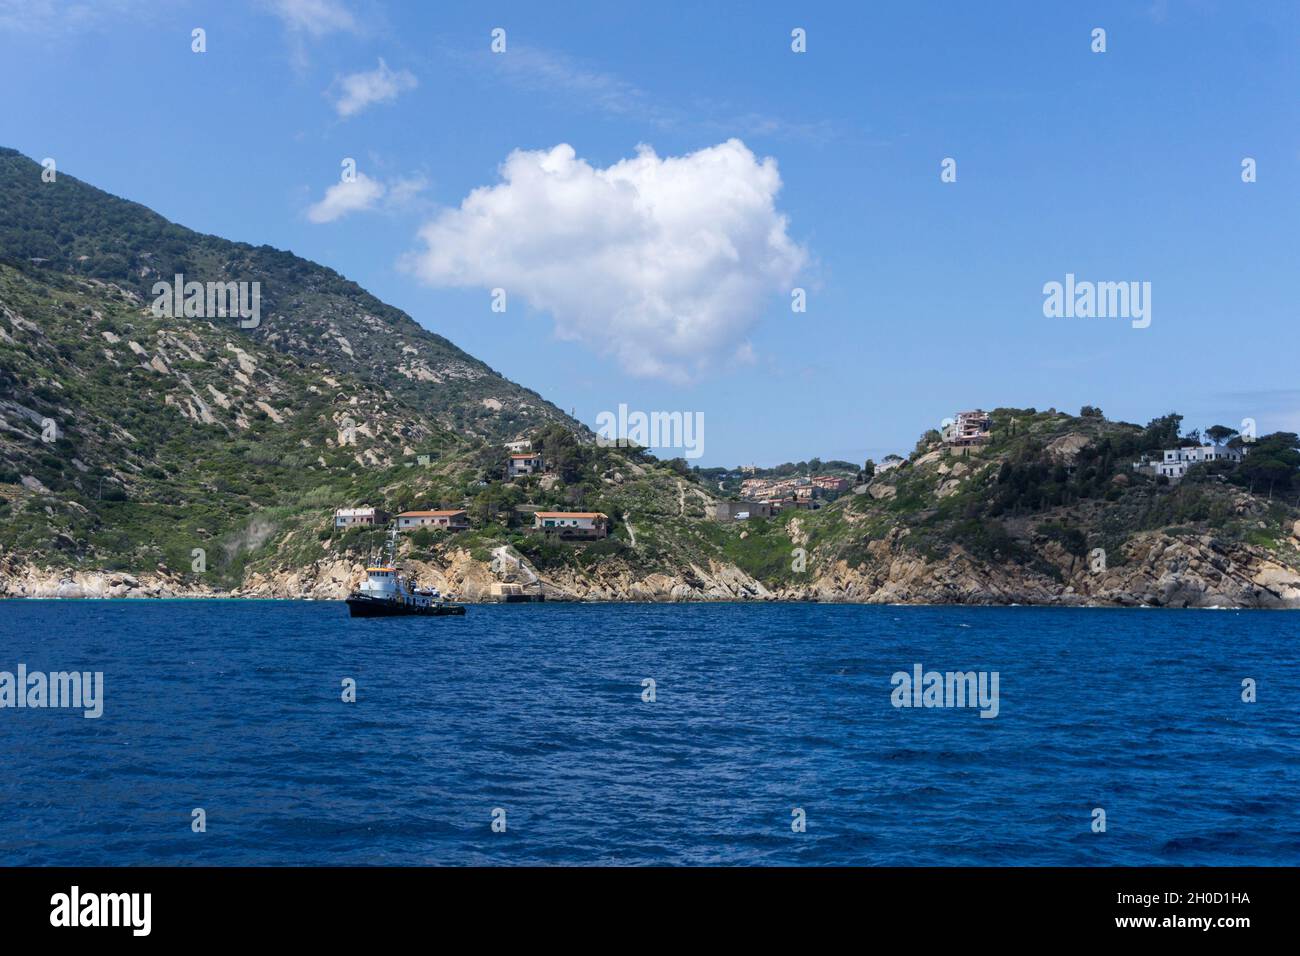 Tuscan Archipelago, Isola del Giglio, Tuscany, Italy, Europe Stock Photo